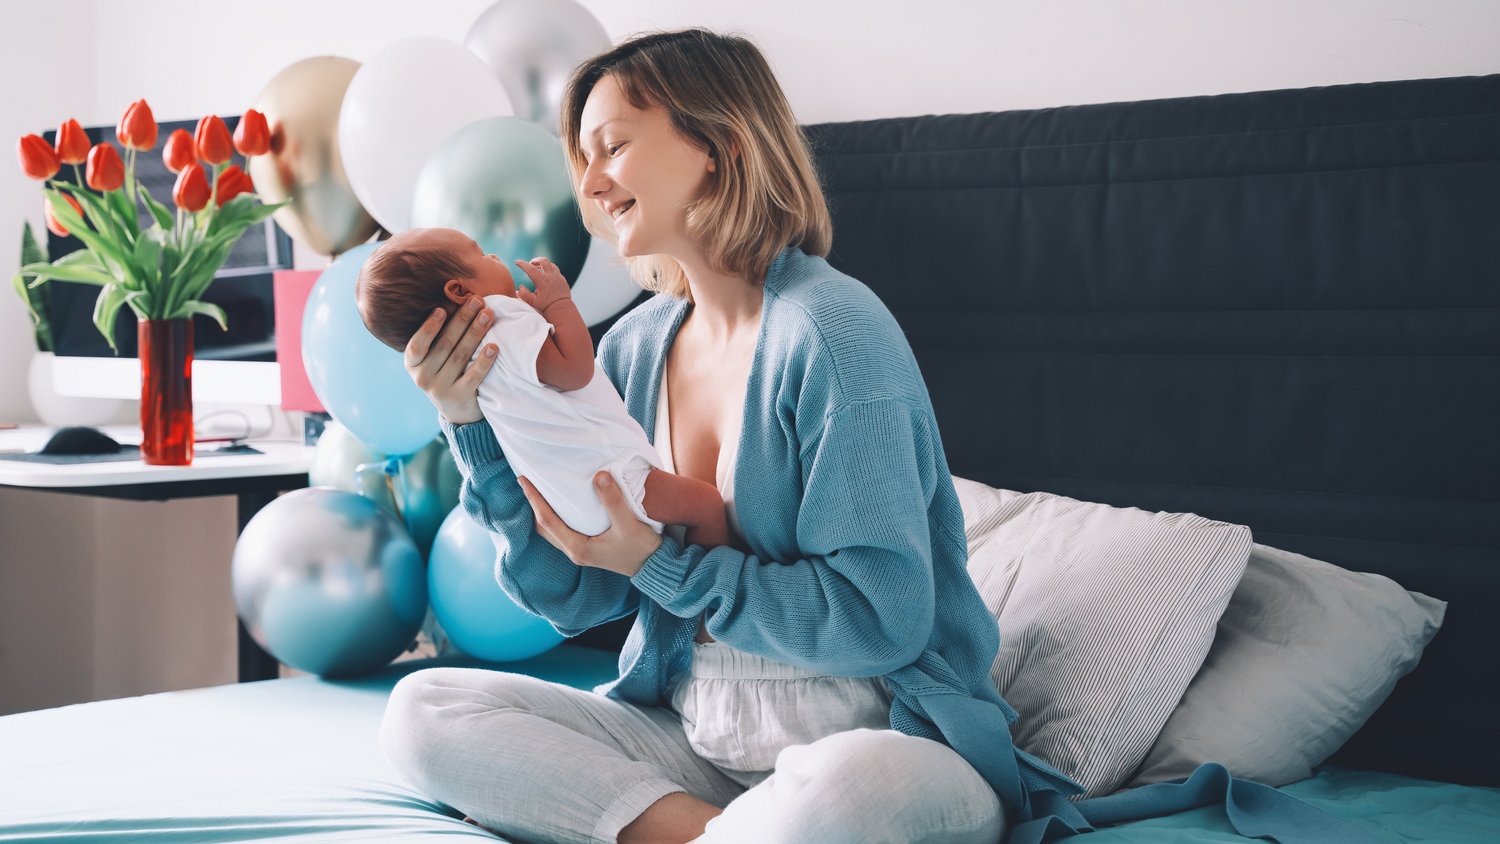 Matratzen Discount bietet optimalen Schlafkomfort für werdende Mütter in Geburtshäusern